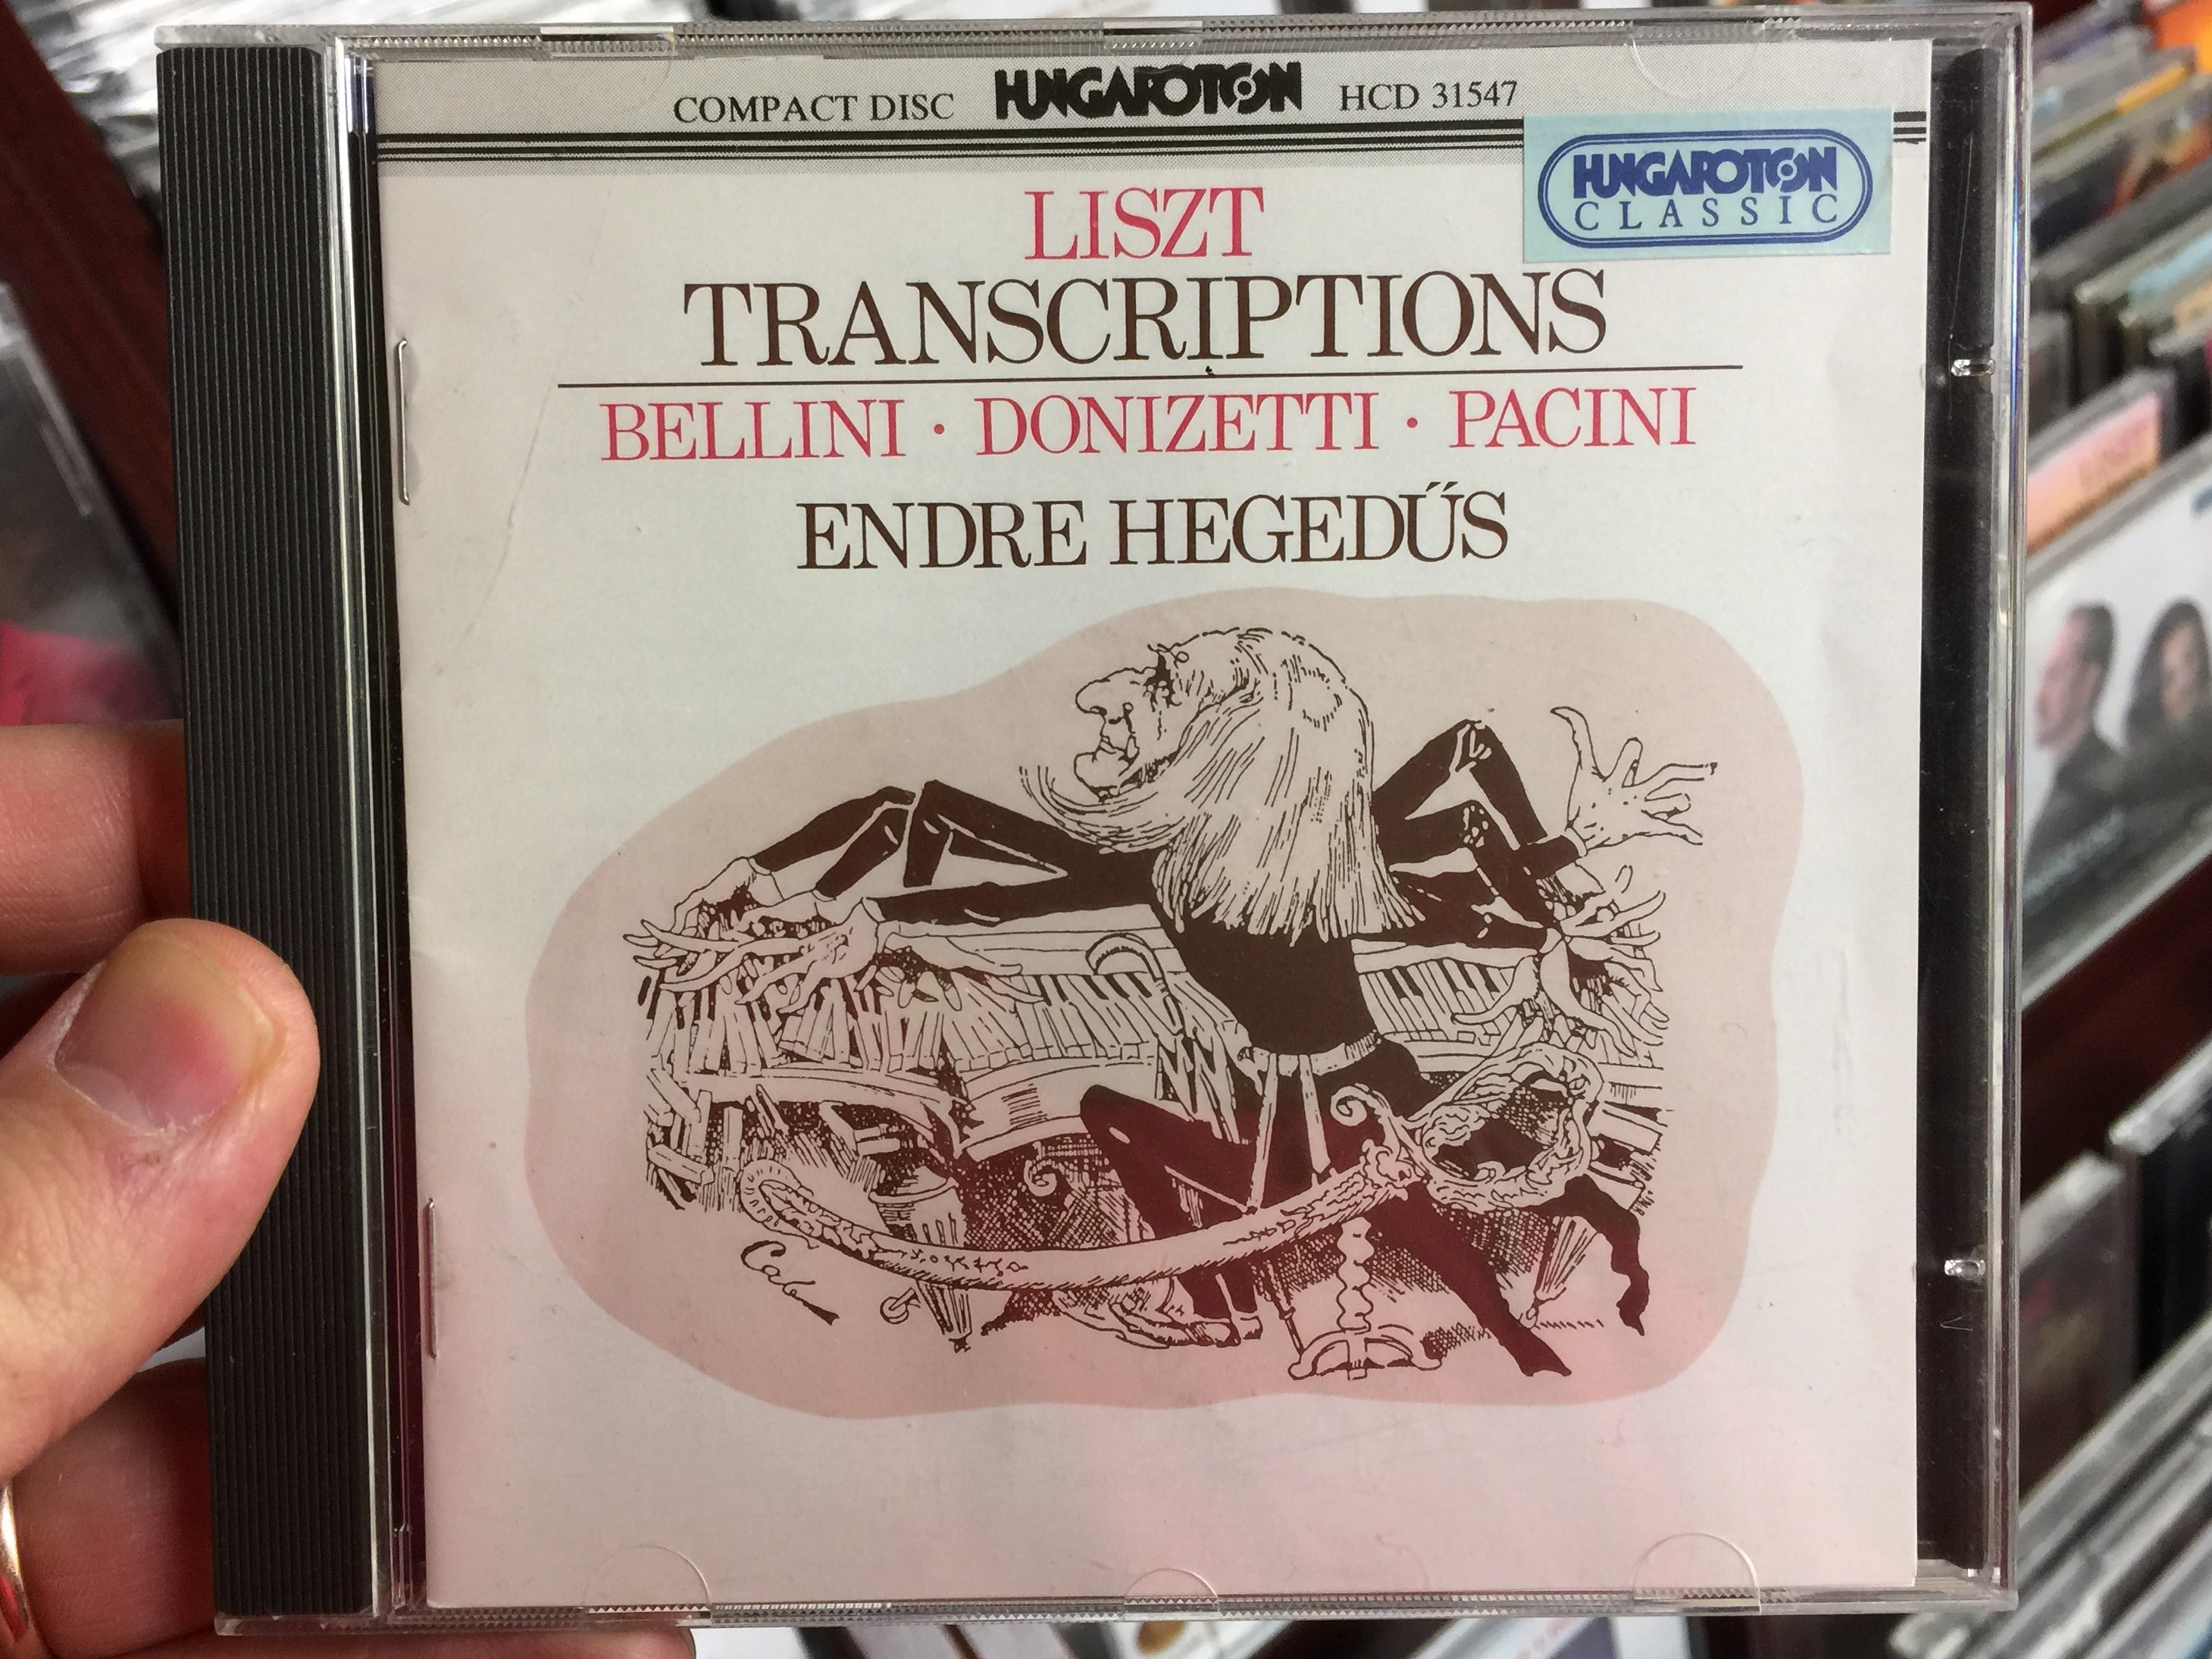 liszt-transcriptions-bellini-donizetti-pacini-endre-hegedus-hungaroton-classic-audio-cd-1993-stereo-hcd-31547-1-.jpg